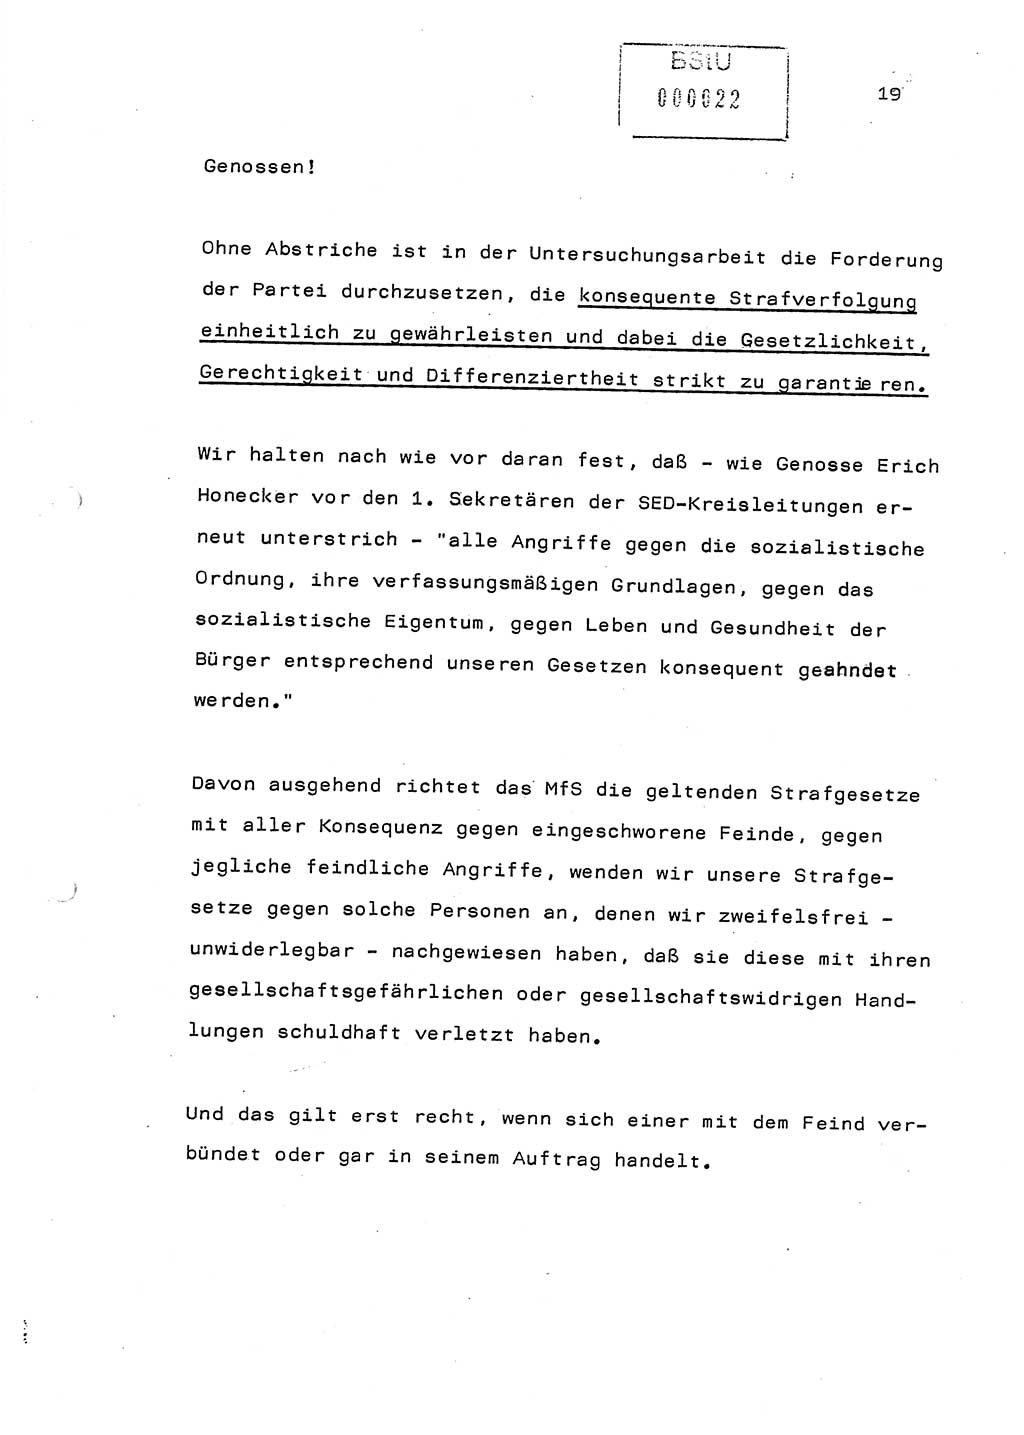 Referat (Generaloberst Erich Mielke) auf der Zentralen Dienstkonferenz am 24.5.1979 [Ministerium für Staatssicherheit (MfS), Deutsche Demokratische Republik (DDR), Der Minister], Berlin 1979, Seite 19 (Ref. DK DDR MfS Min. /79 1979, S. 19)